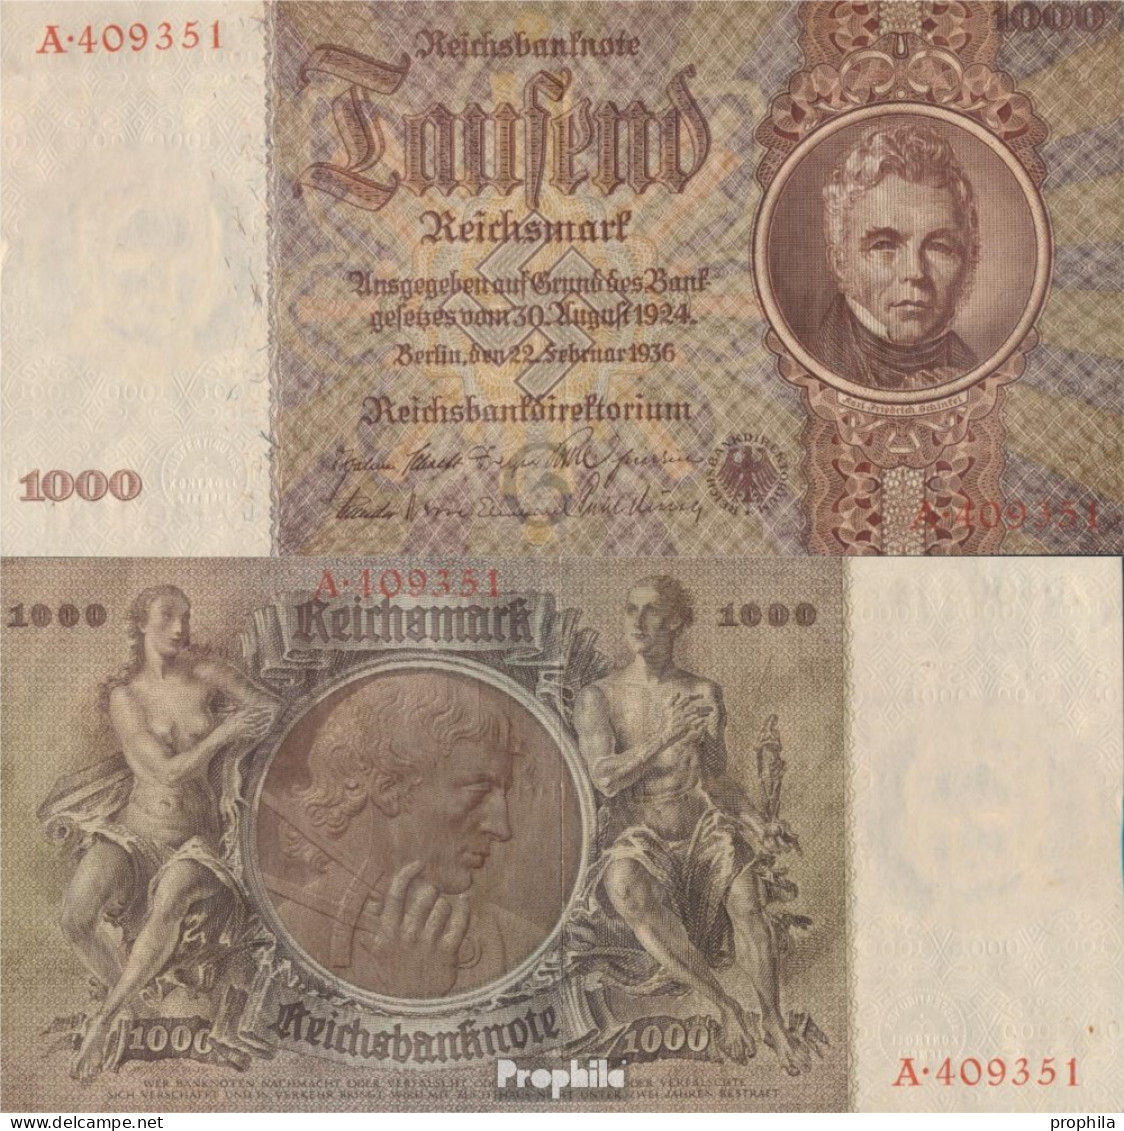 Deutsches Reich Rosenbg: 177 Udr.- Bst. G, Serie:A Gebraucht (III) 1936 1.000 Reichsmark - 1000 Reichsmark